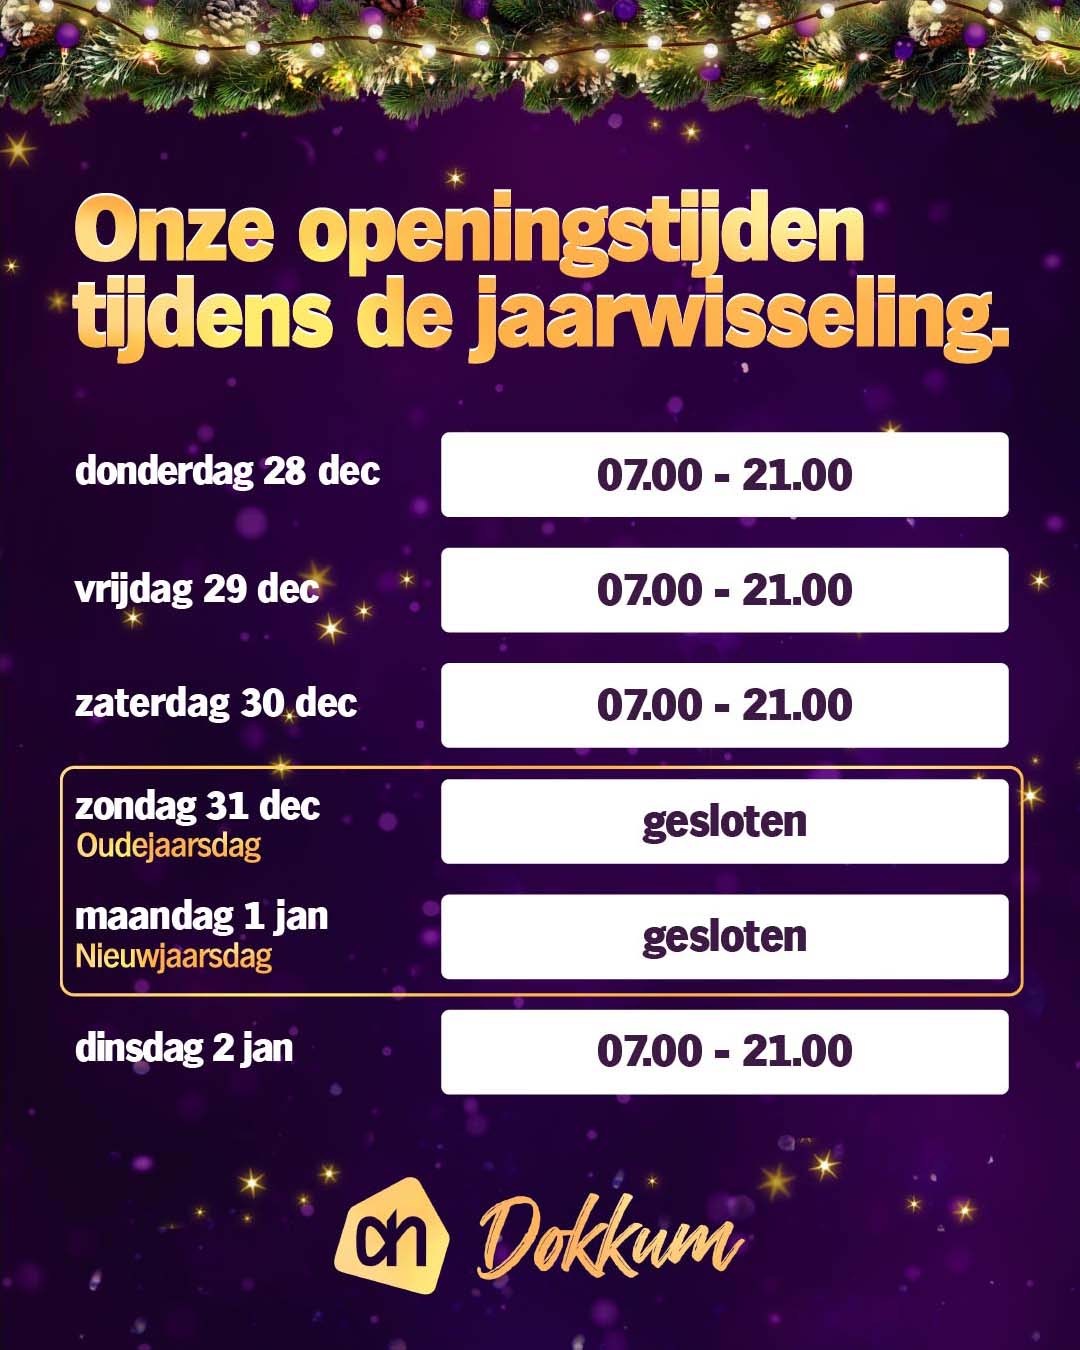 Openingstijden feestdagen jaarwisseling<br />
oud en nieuw 2023 Albert Heijn Dokkum